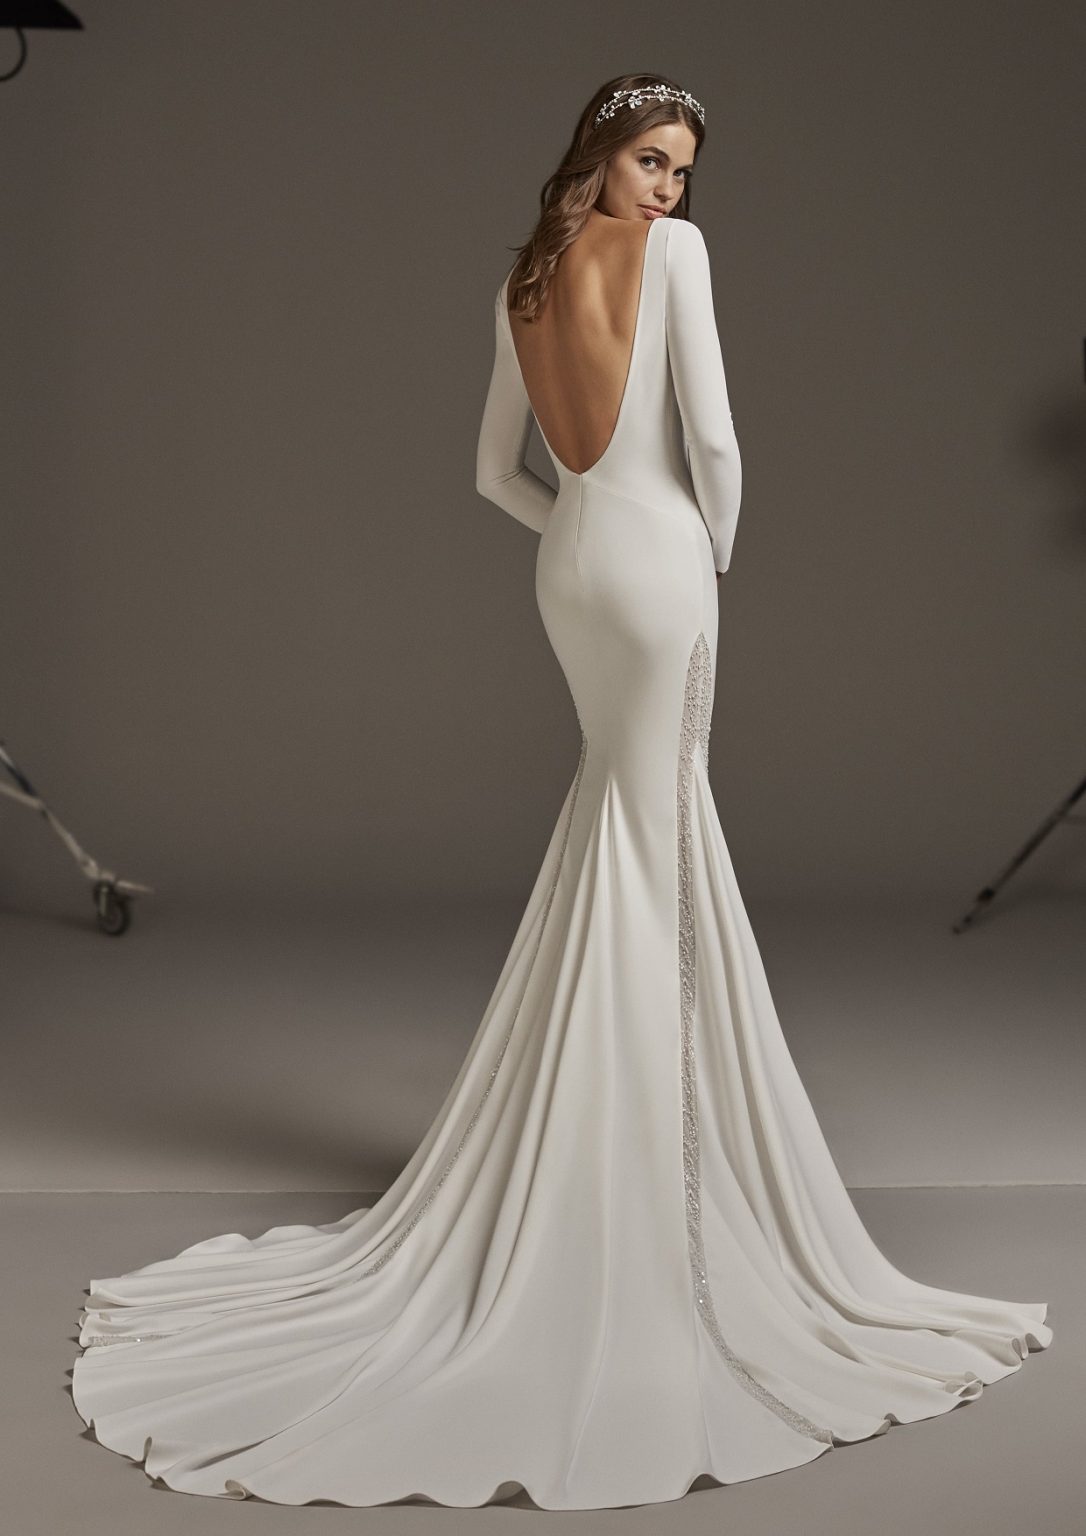 Minimal Wedding Gown With Scoop Back Neckline Modes Bridal Nz 